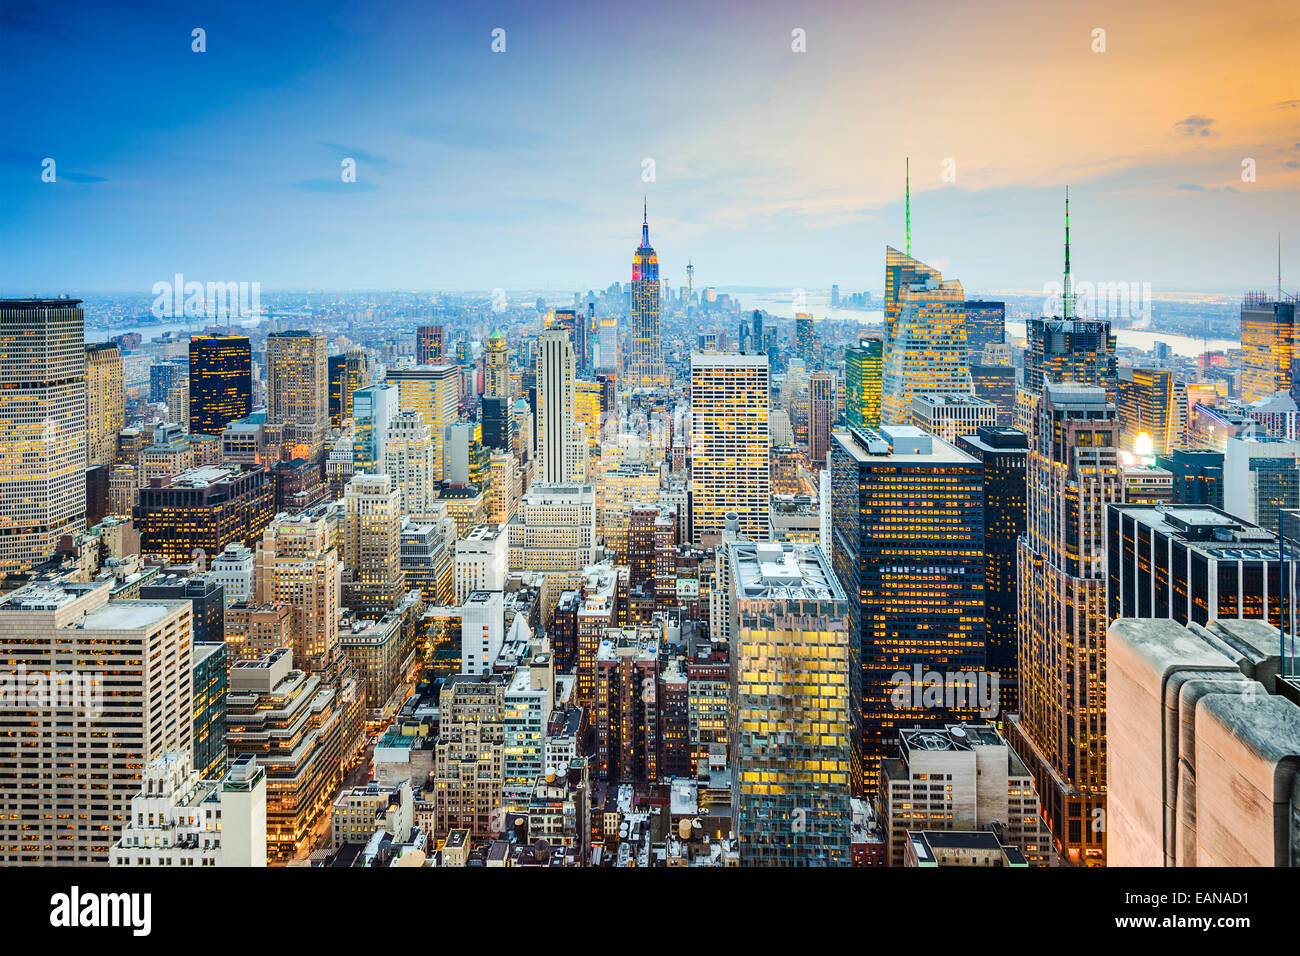 La ville de New York, USA city skyline de Manhattan. Banque D'Images